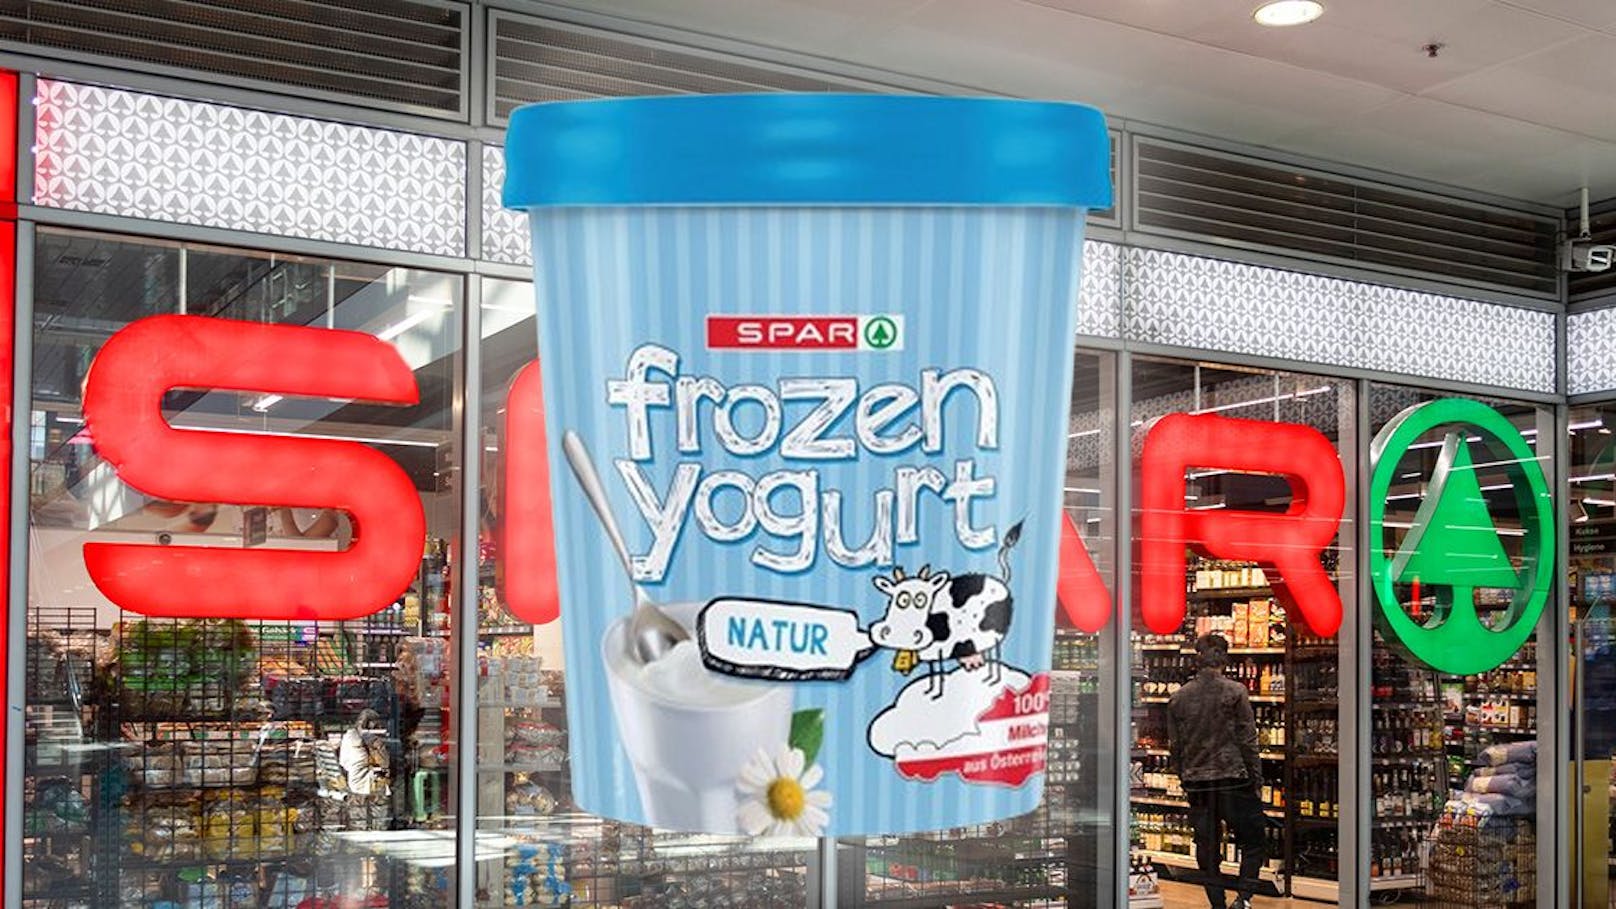 Aufgedeckt! Zu wenig Joghurt im "Frozen Yogurt"